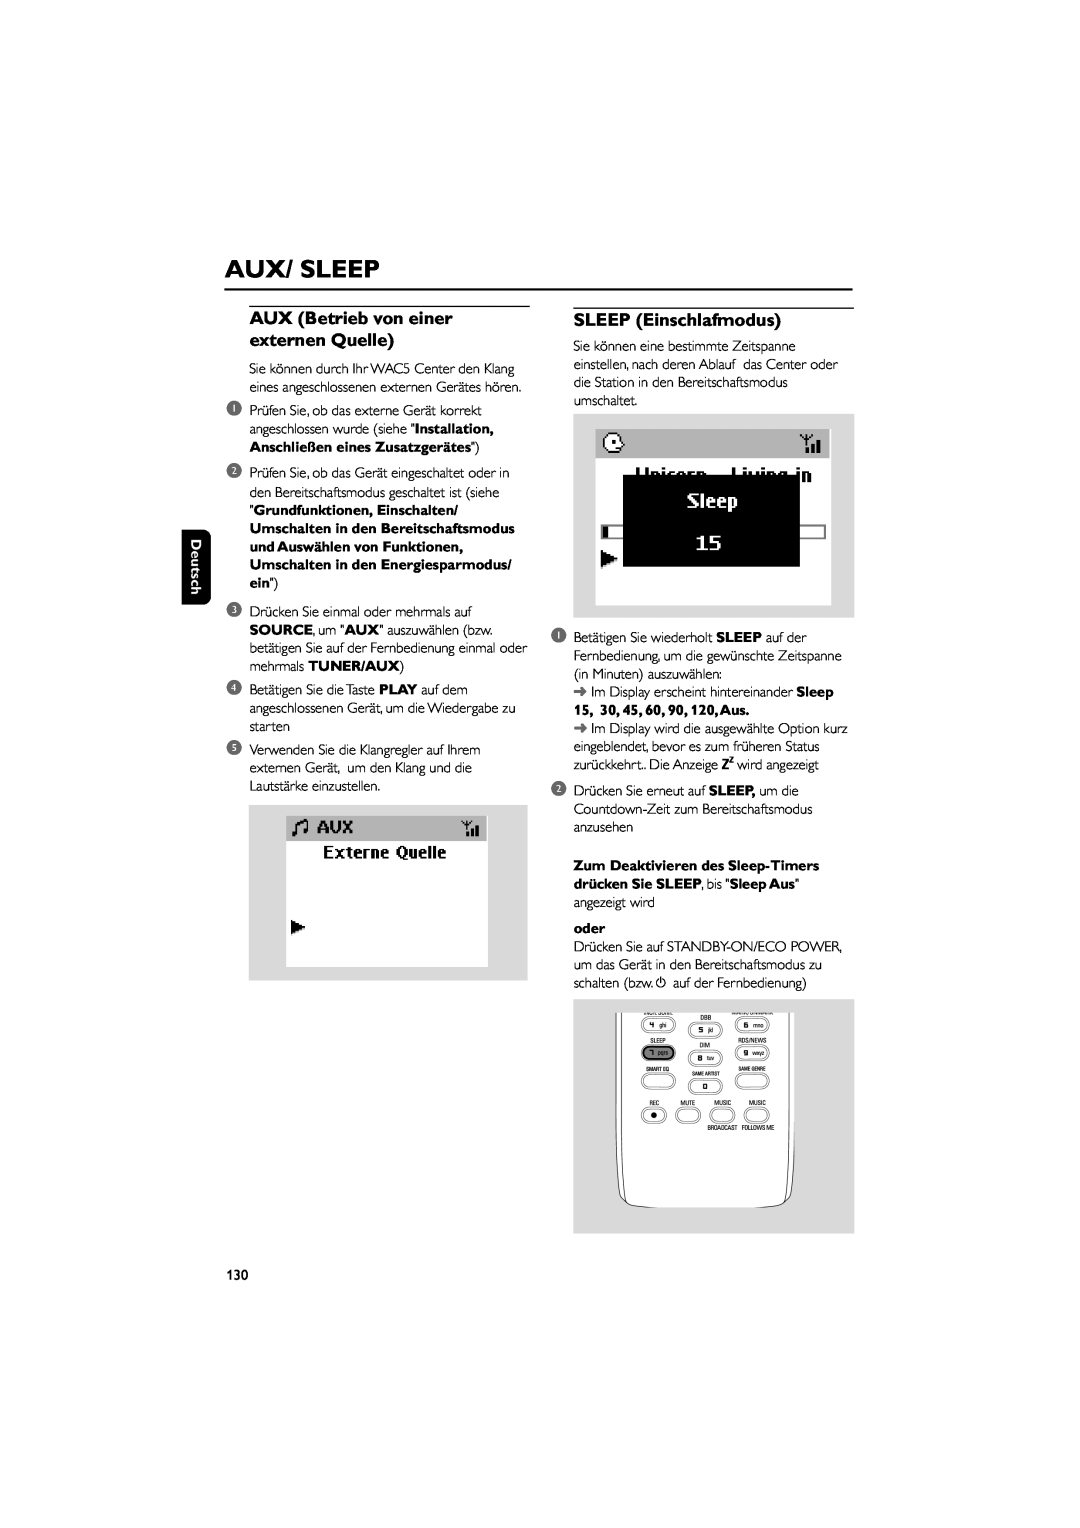 Philips WAC5 user manual Aux/ Sleep, AUX Betrieb von einer externen Quelle, SLEEP Einschlafmodus, Deutsch, oder 